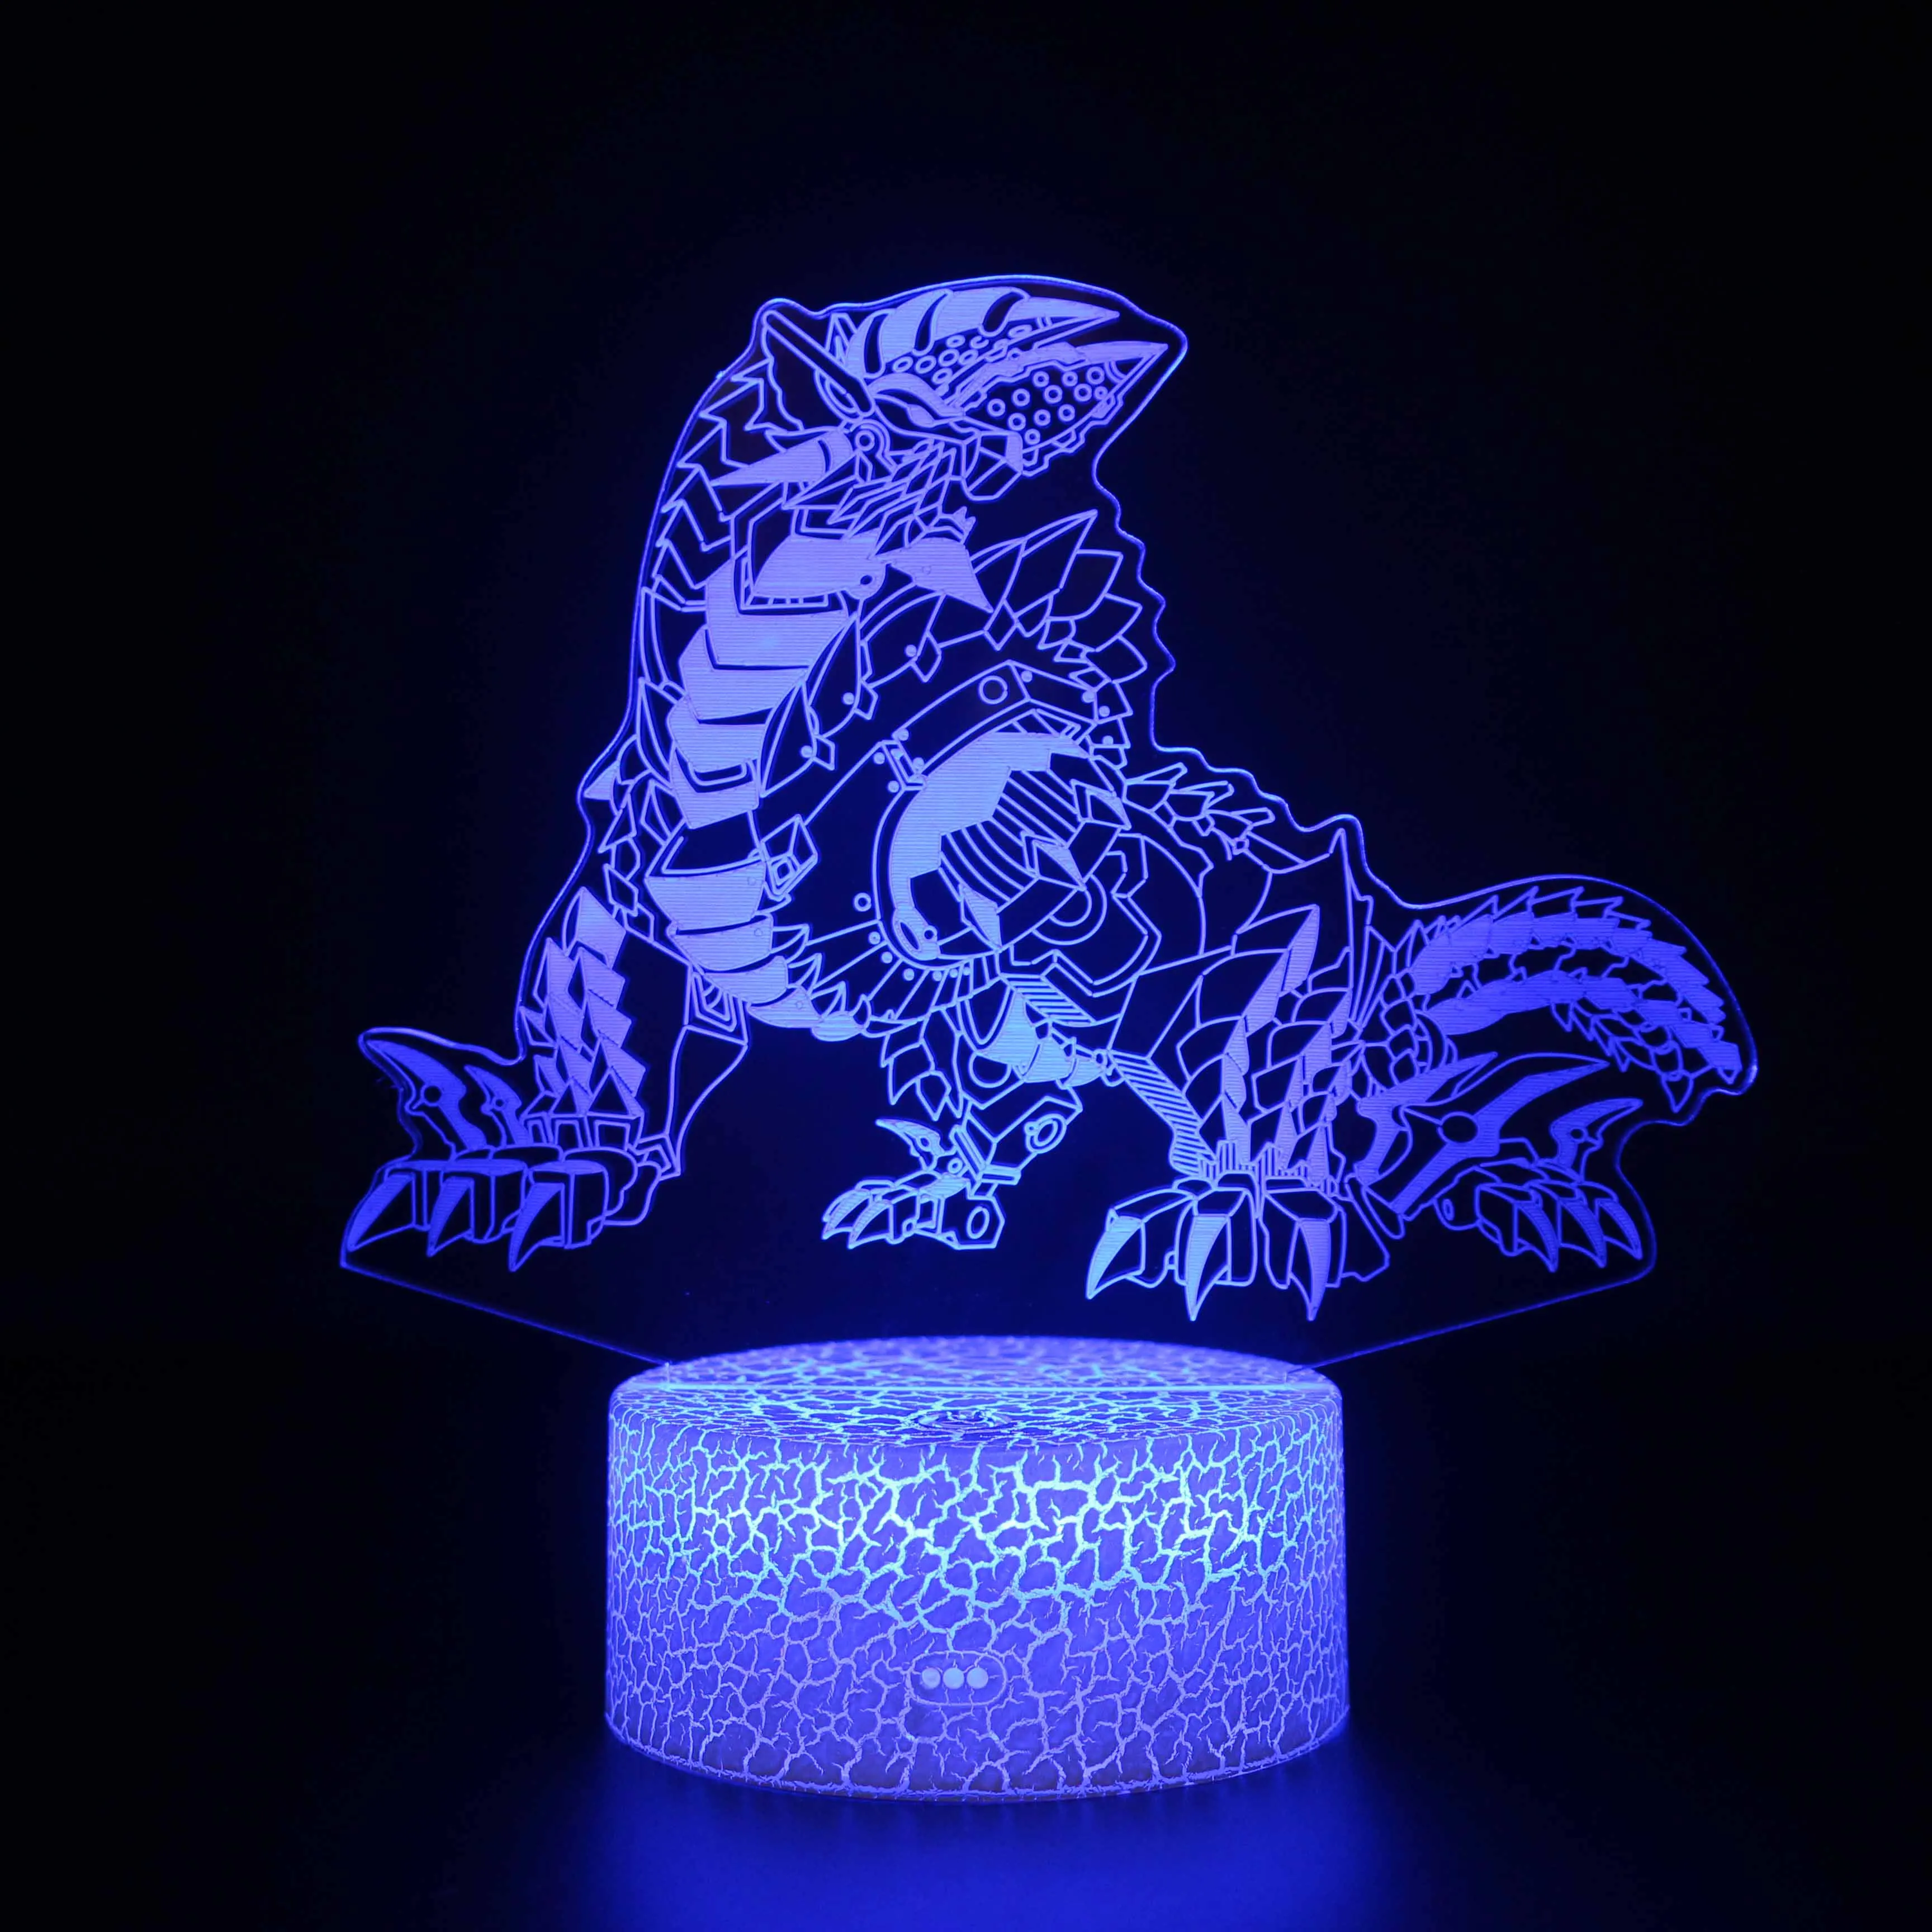 Светодиодный ночник динозавр 3D лампа милая игрушка подарок 7 цветов абстрактная графика мультфильм атмосфера лампа для детей Детская комната - Испускаемый цвет: 11